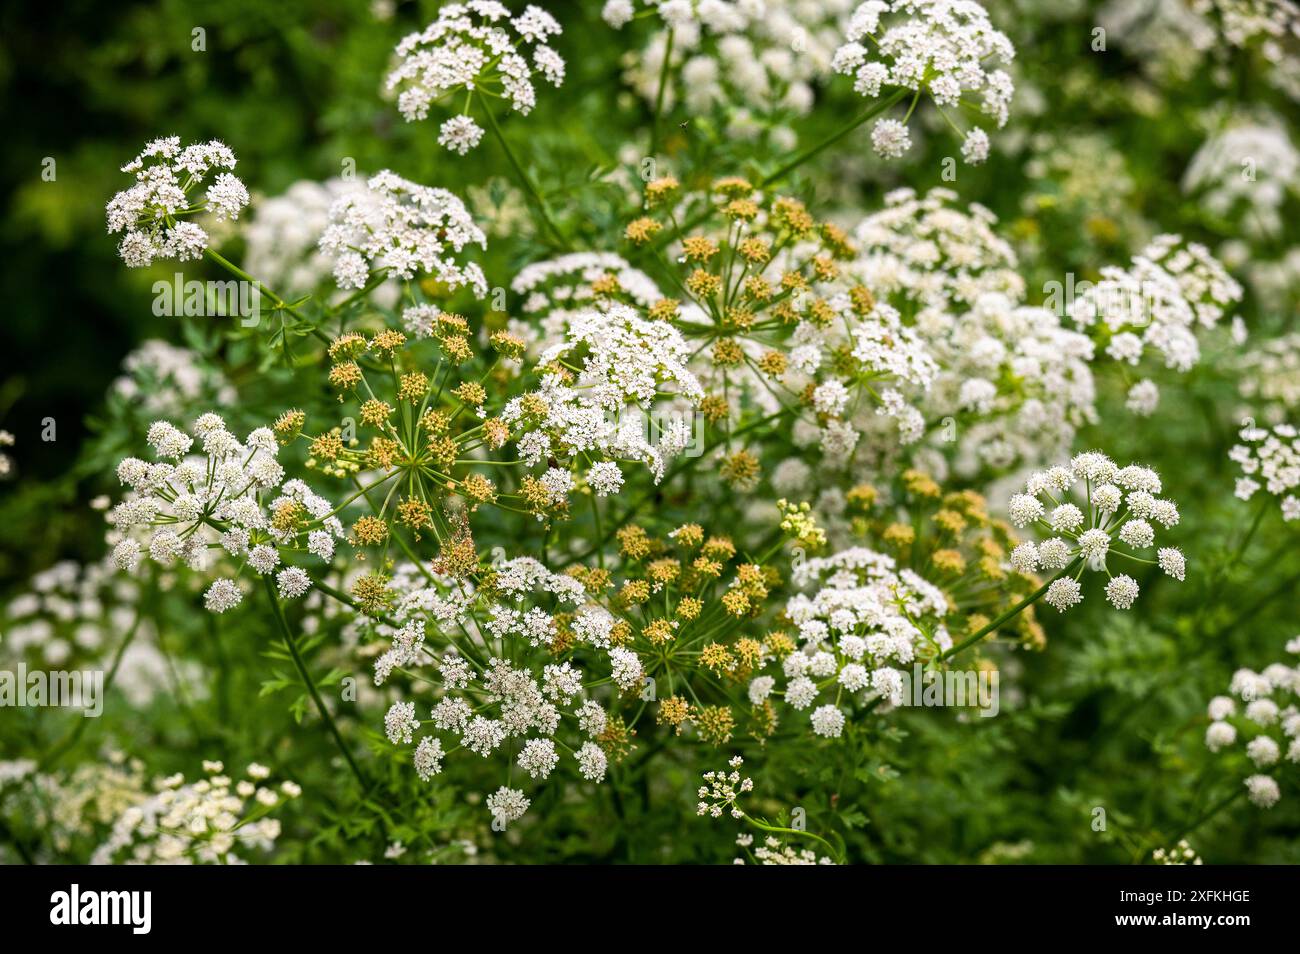 Hemlockpflanze ( Conium maculatum ), die in der Landschaft von Sussex wild wächst. Hemlock ist eine berüchtigte giftige Pflanze und produziert im Sommer schirmartige weiße Blüten. UK Credit Simon Dack Stockfoto